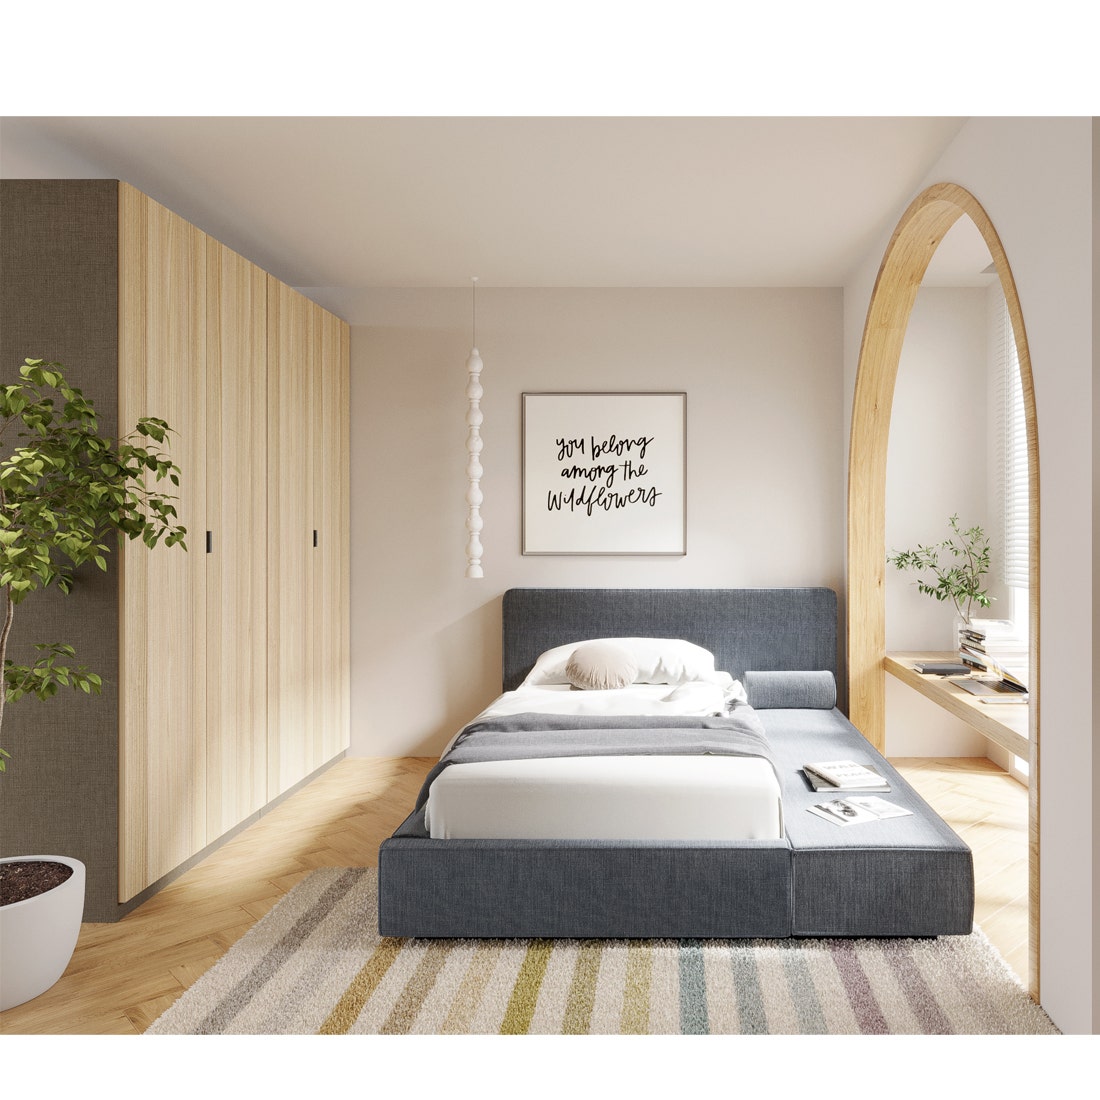 เตียงนอน 3.5 ฟุต รุ่น Lavique (ด้านขวา) สีเทา5